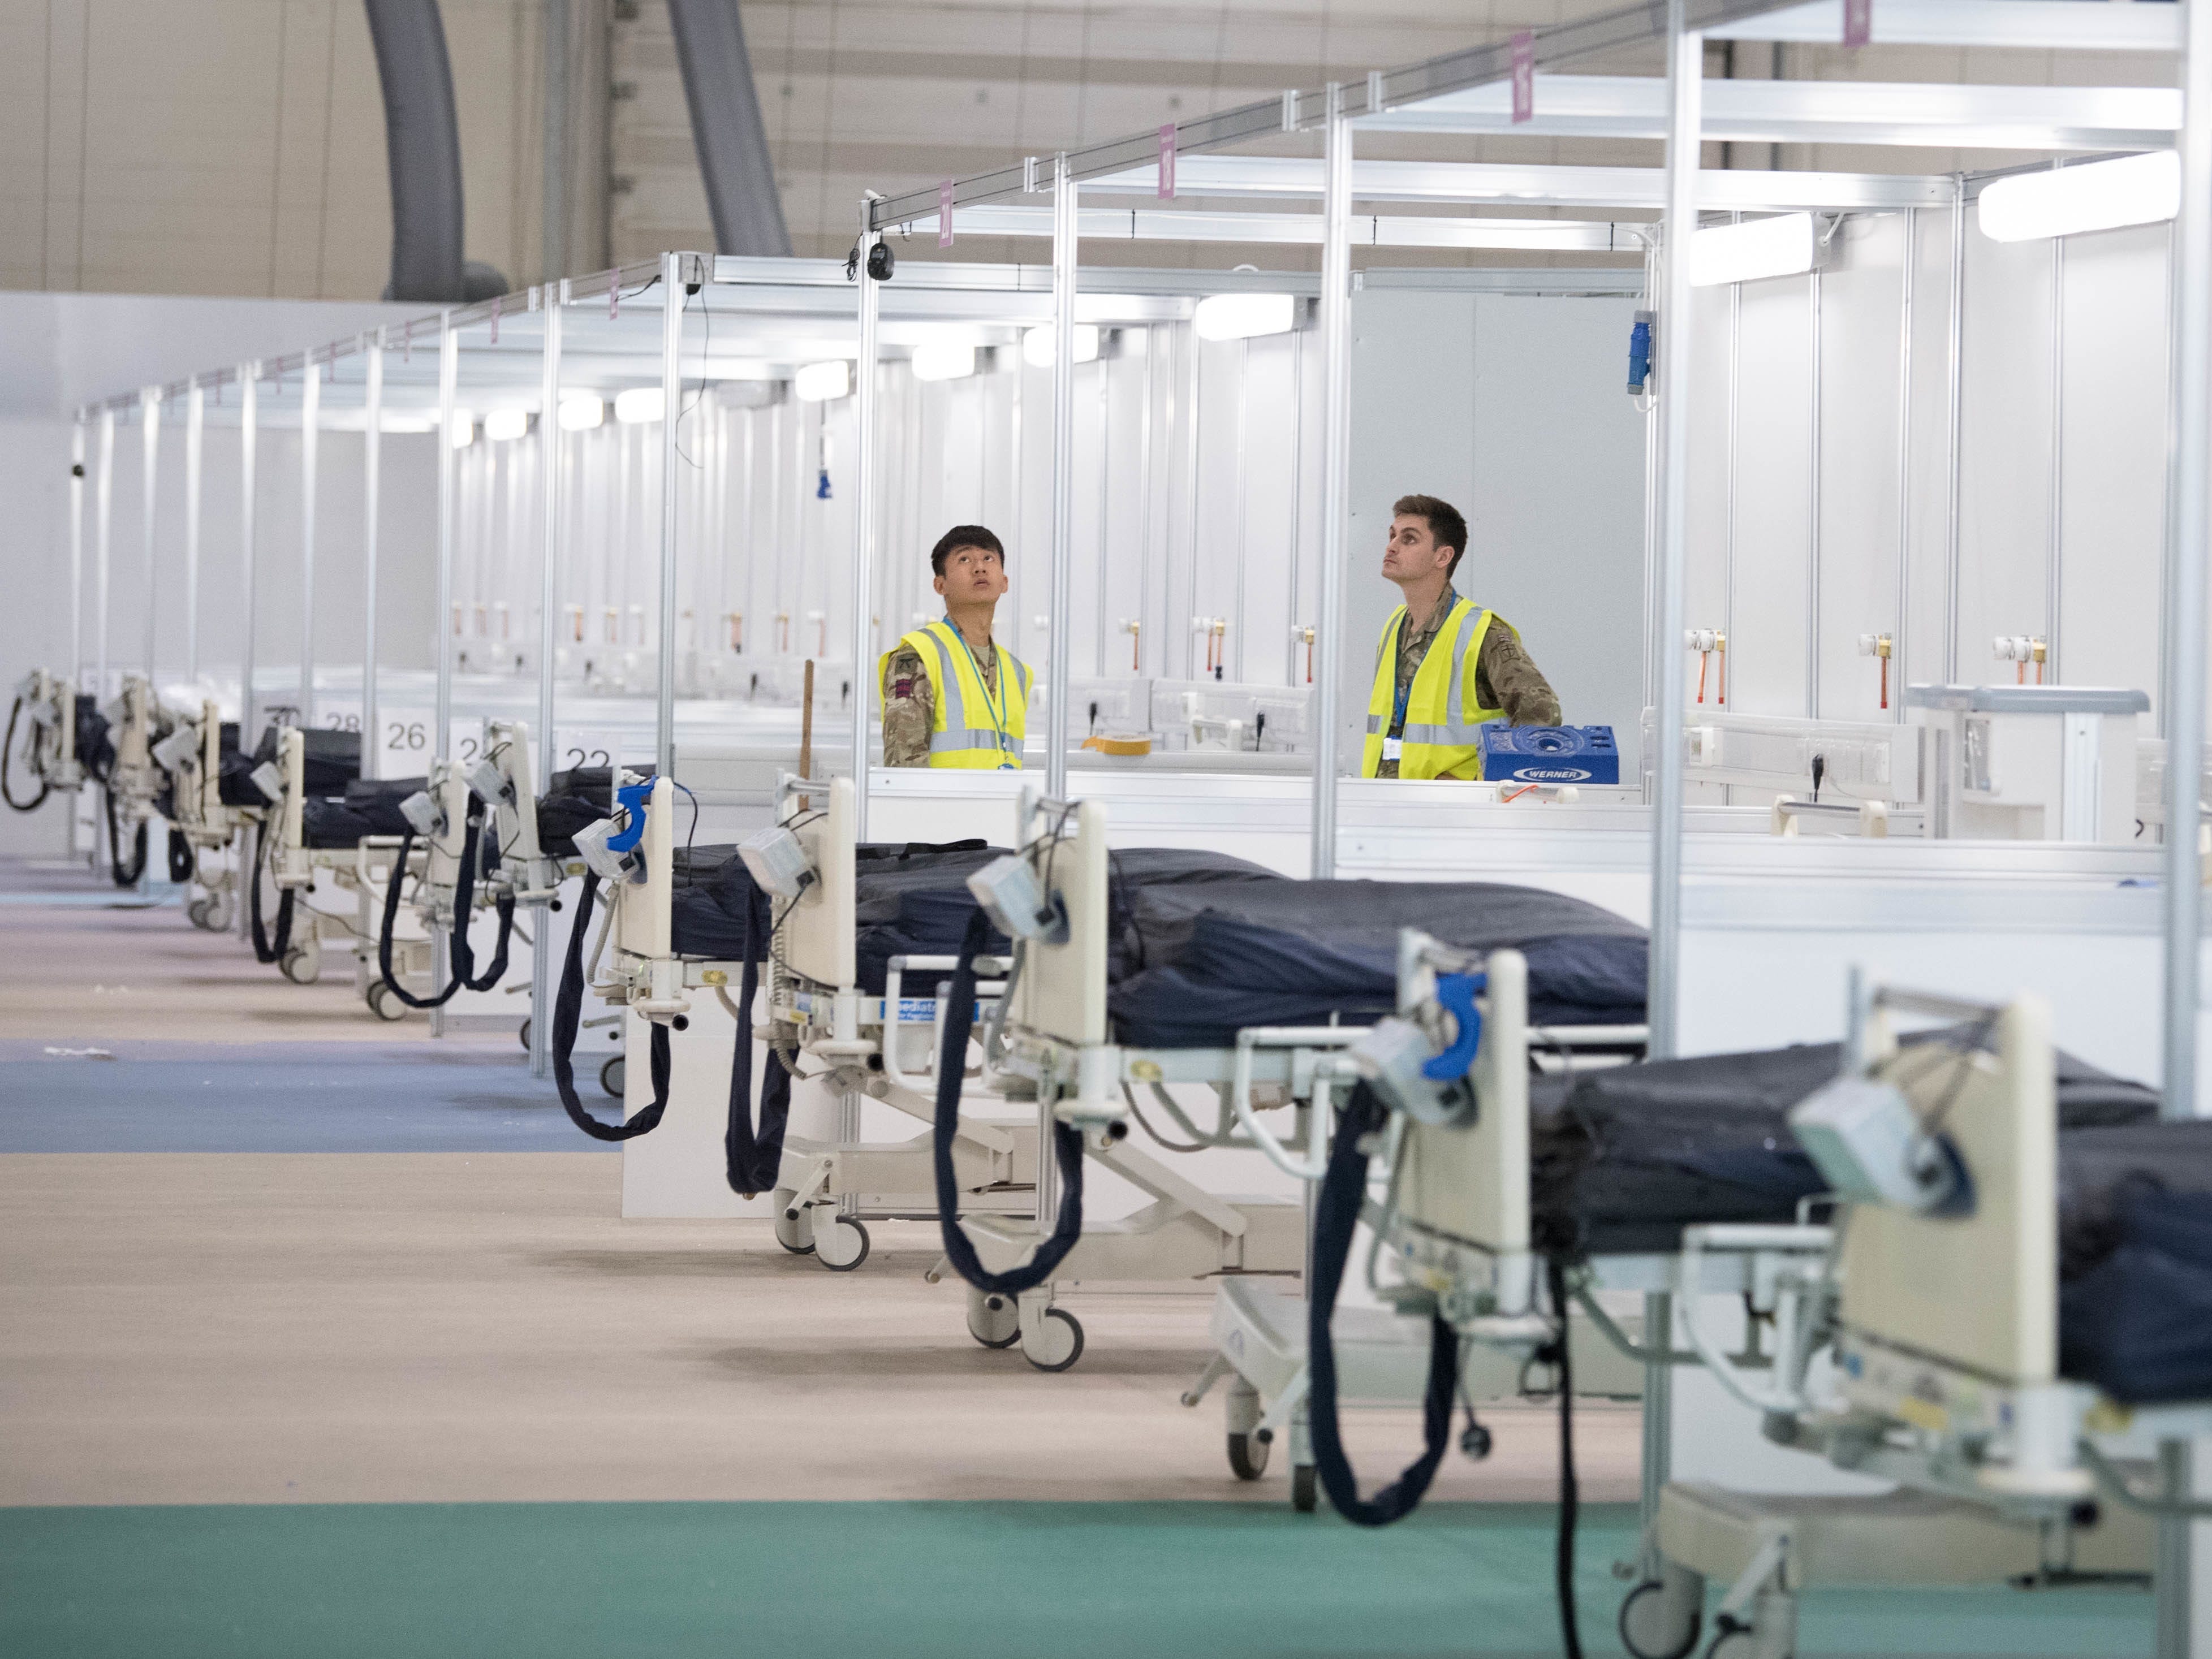 Soldaten und private Auftragnehmer helfen bei der Vorbereitung des ExCel-Zentrums, das in das provisorische NHS-Nightingale-Krankenhaus umgewandelt wird.